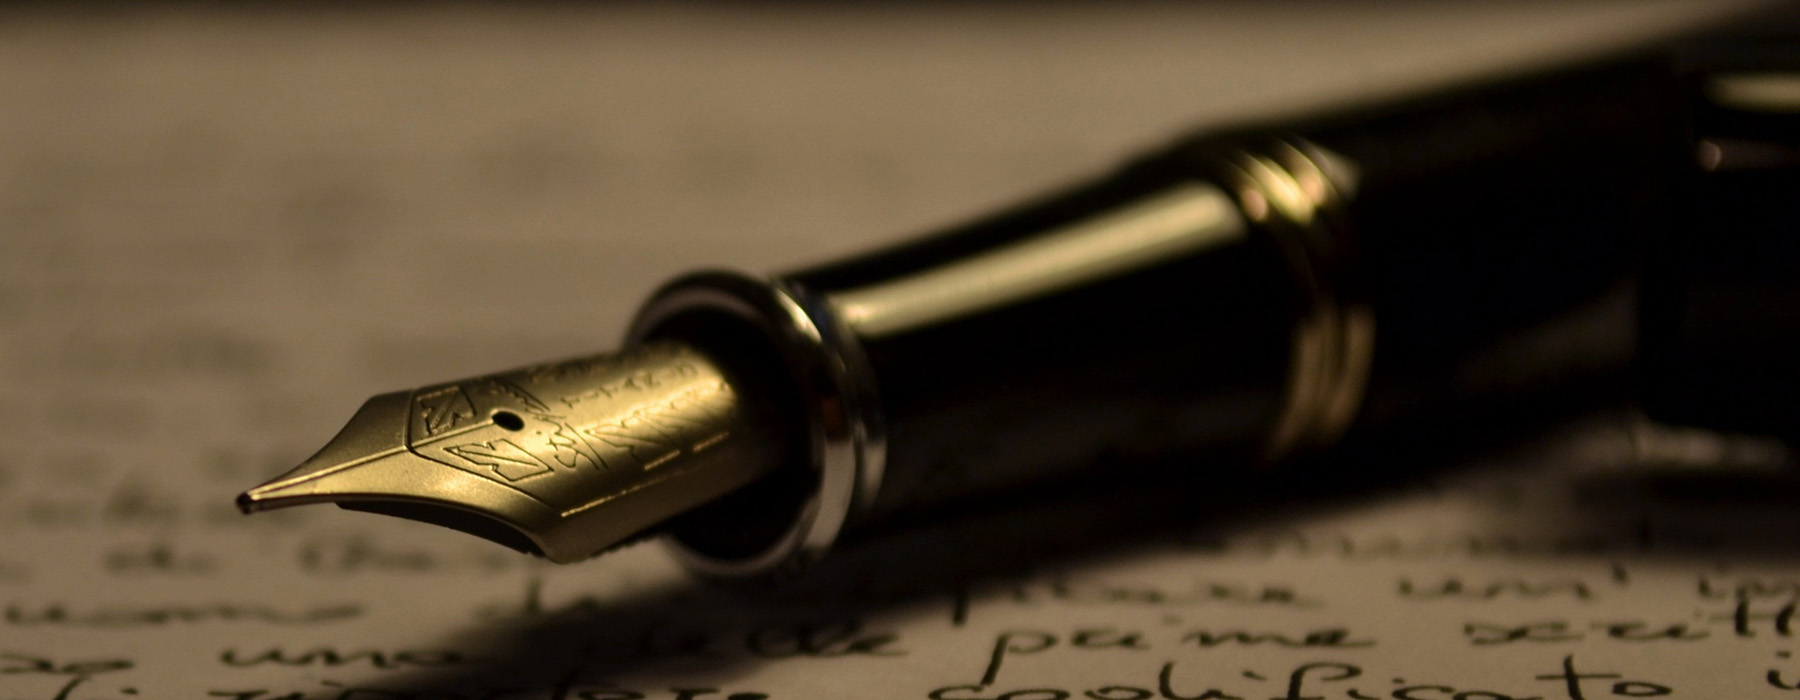 Penna stilografica su un foglio scritto a mano